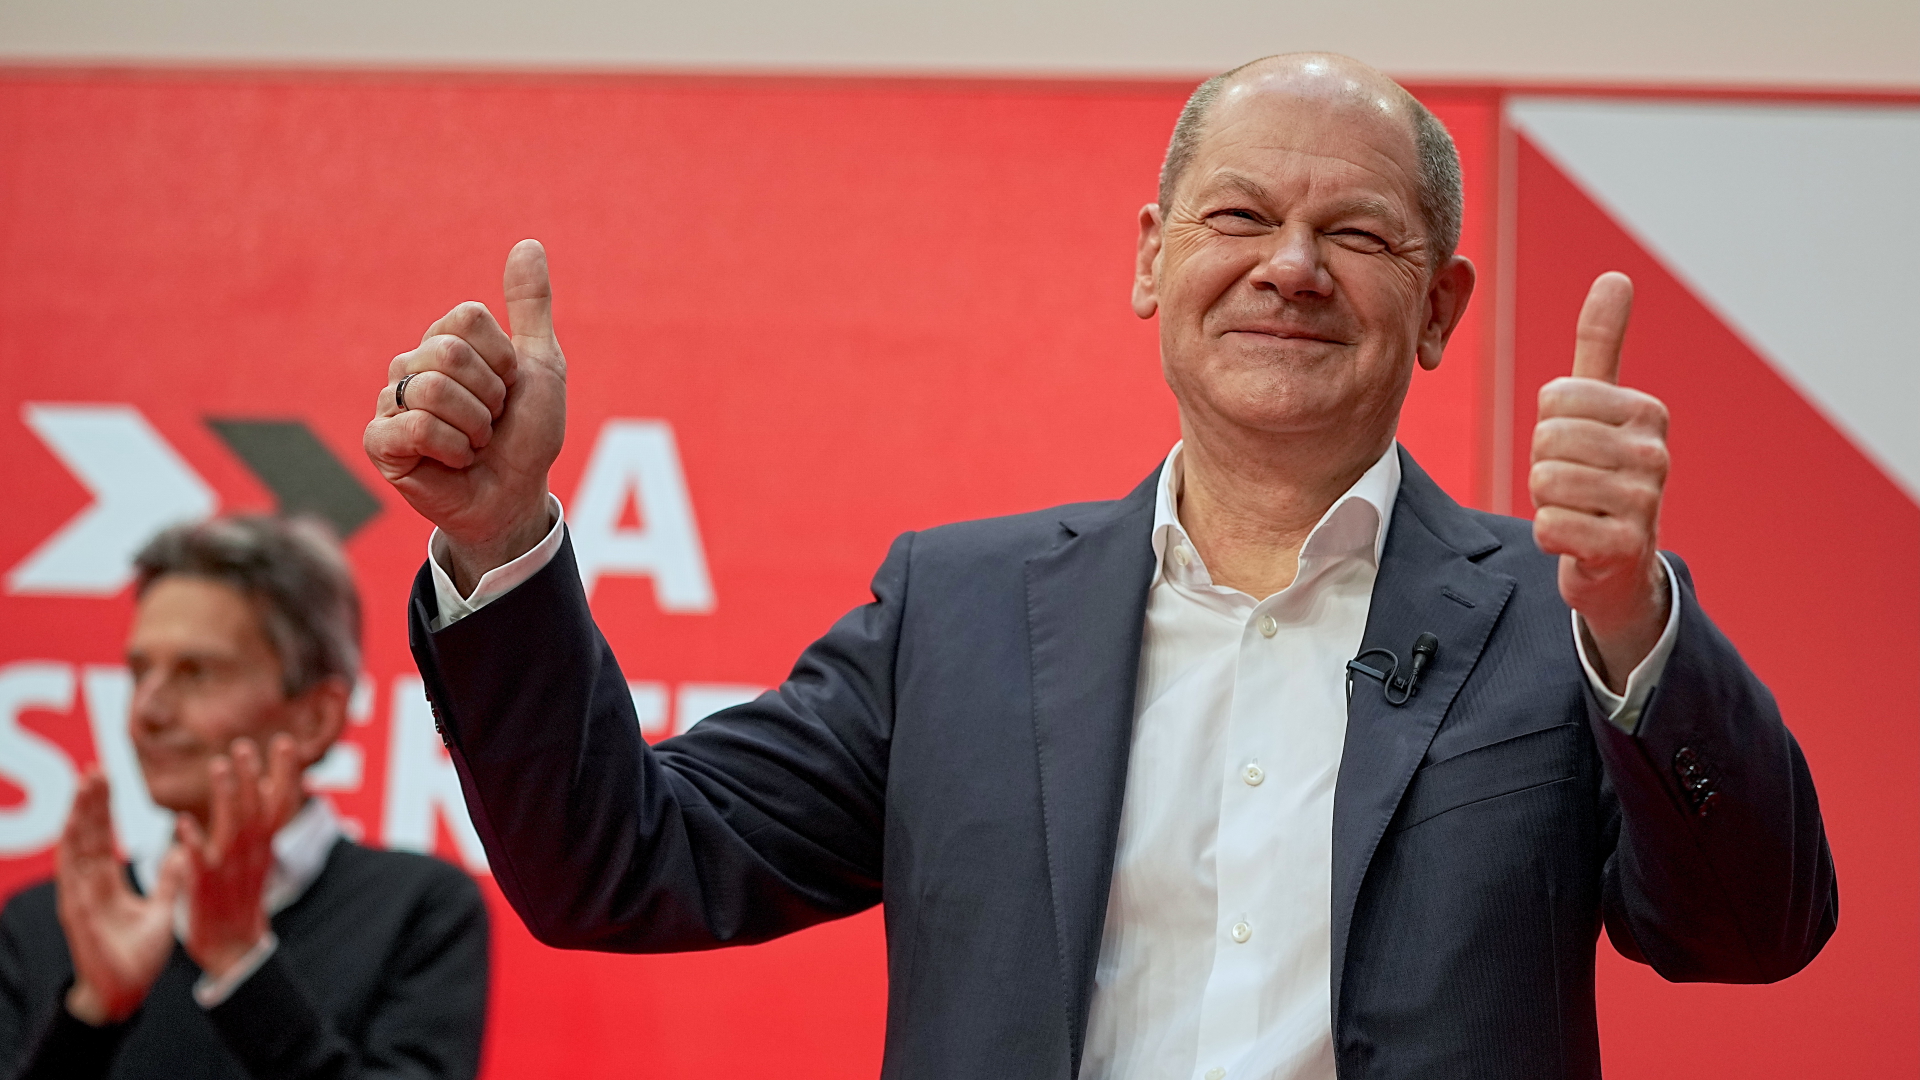 Olaf Scholz, designierter SPD Kanzler und geschäftsführender Bundesminister der Finanzen, hebt nach der Zustimmung beim SPD-Parteitag im Willy-Brandt-Haus zum geplanten Koalitionsvertrag die Daumen. | dpa